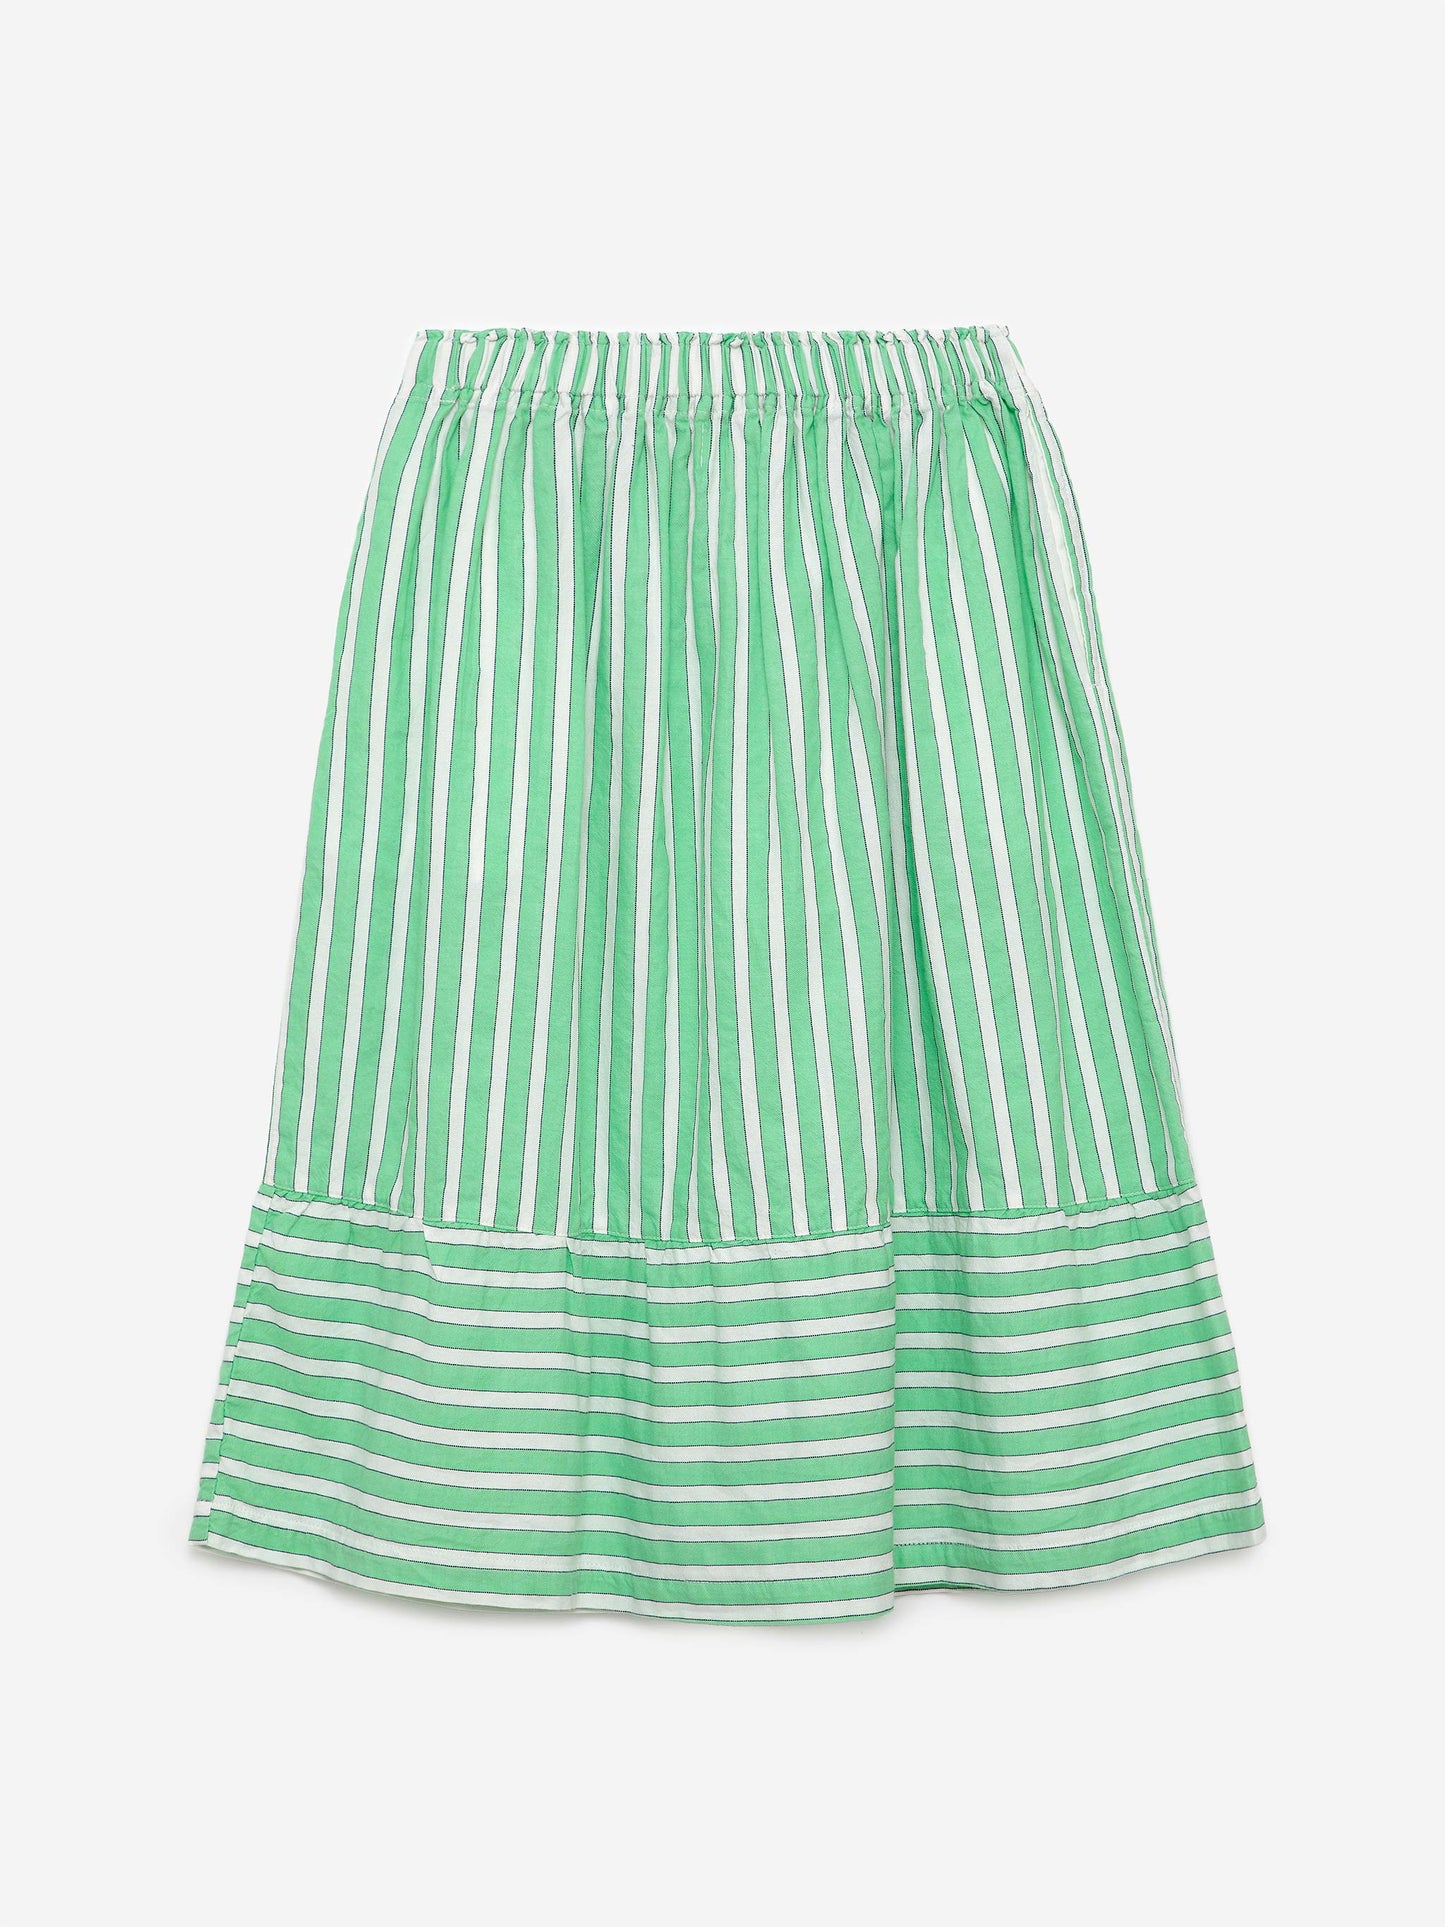 Skirt nº04 Nile Green